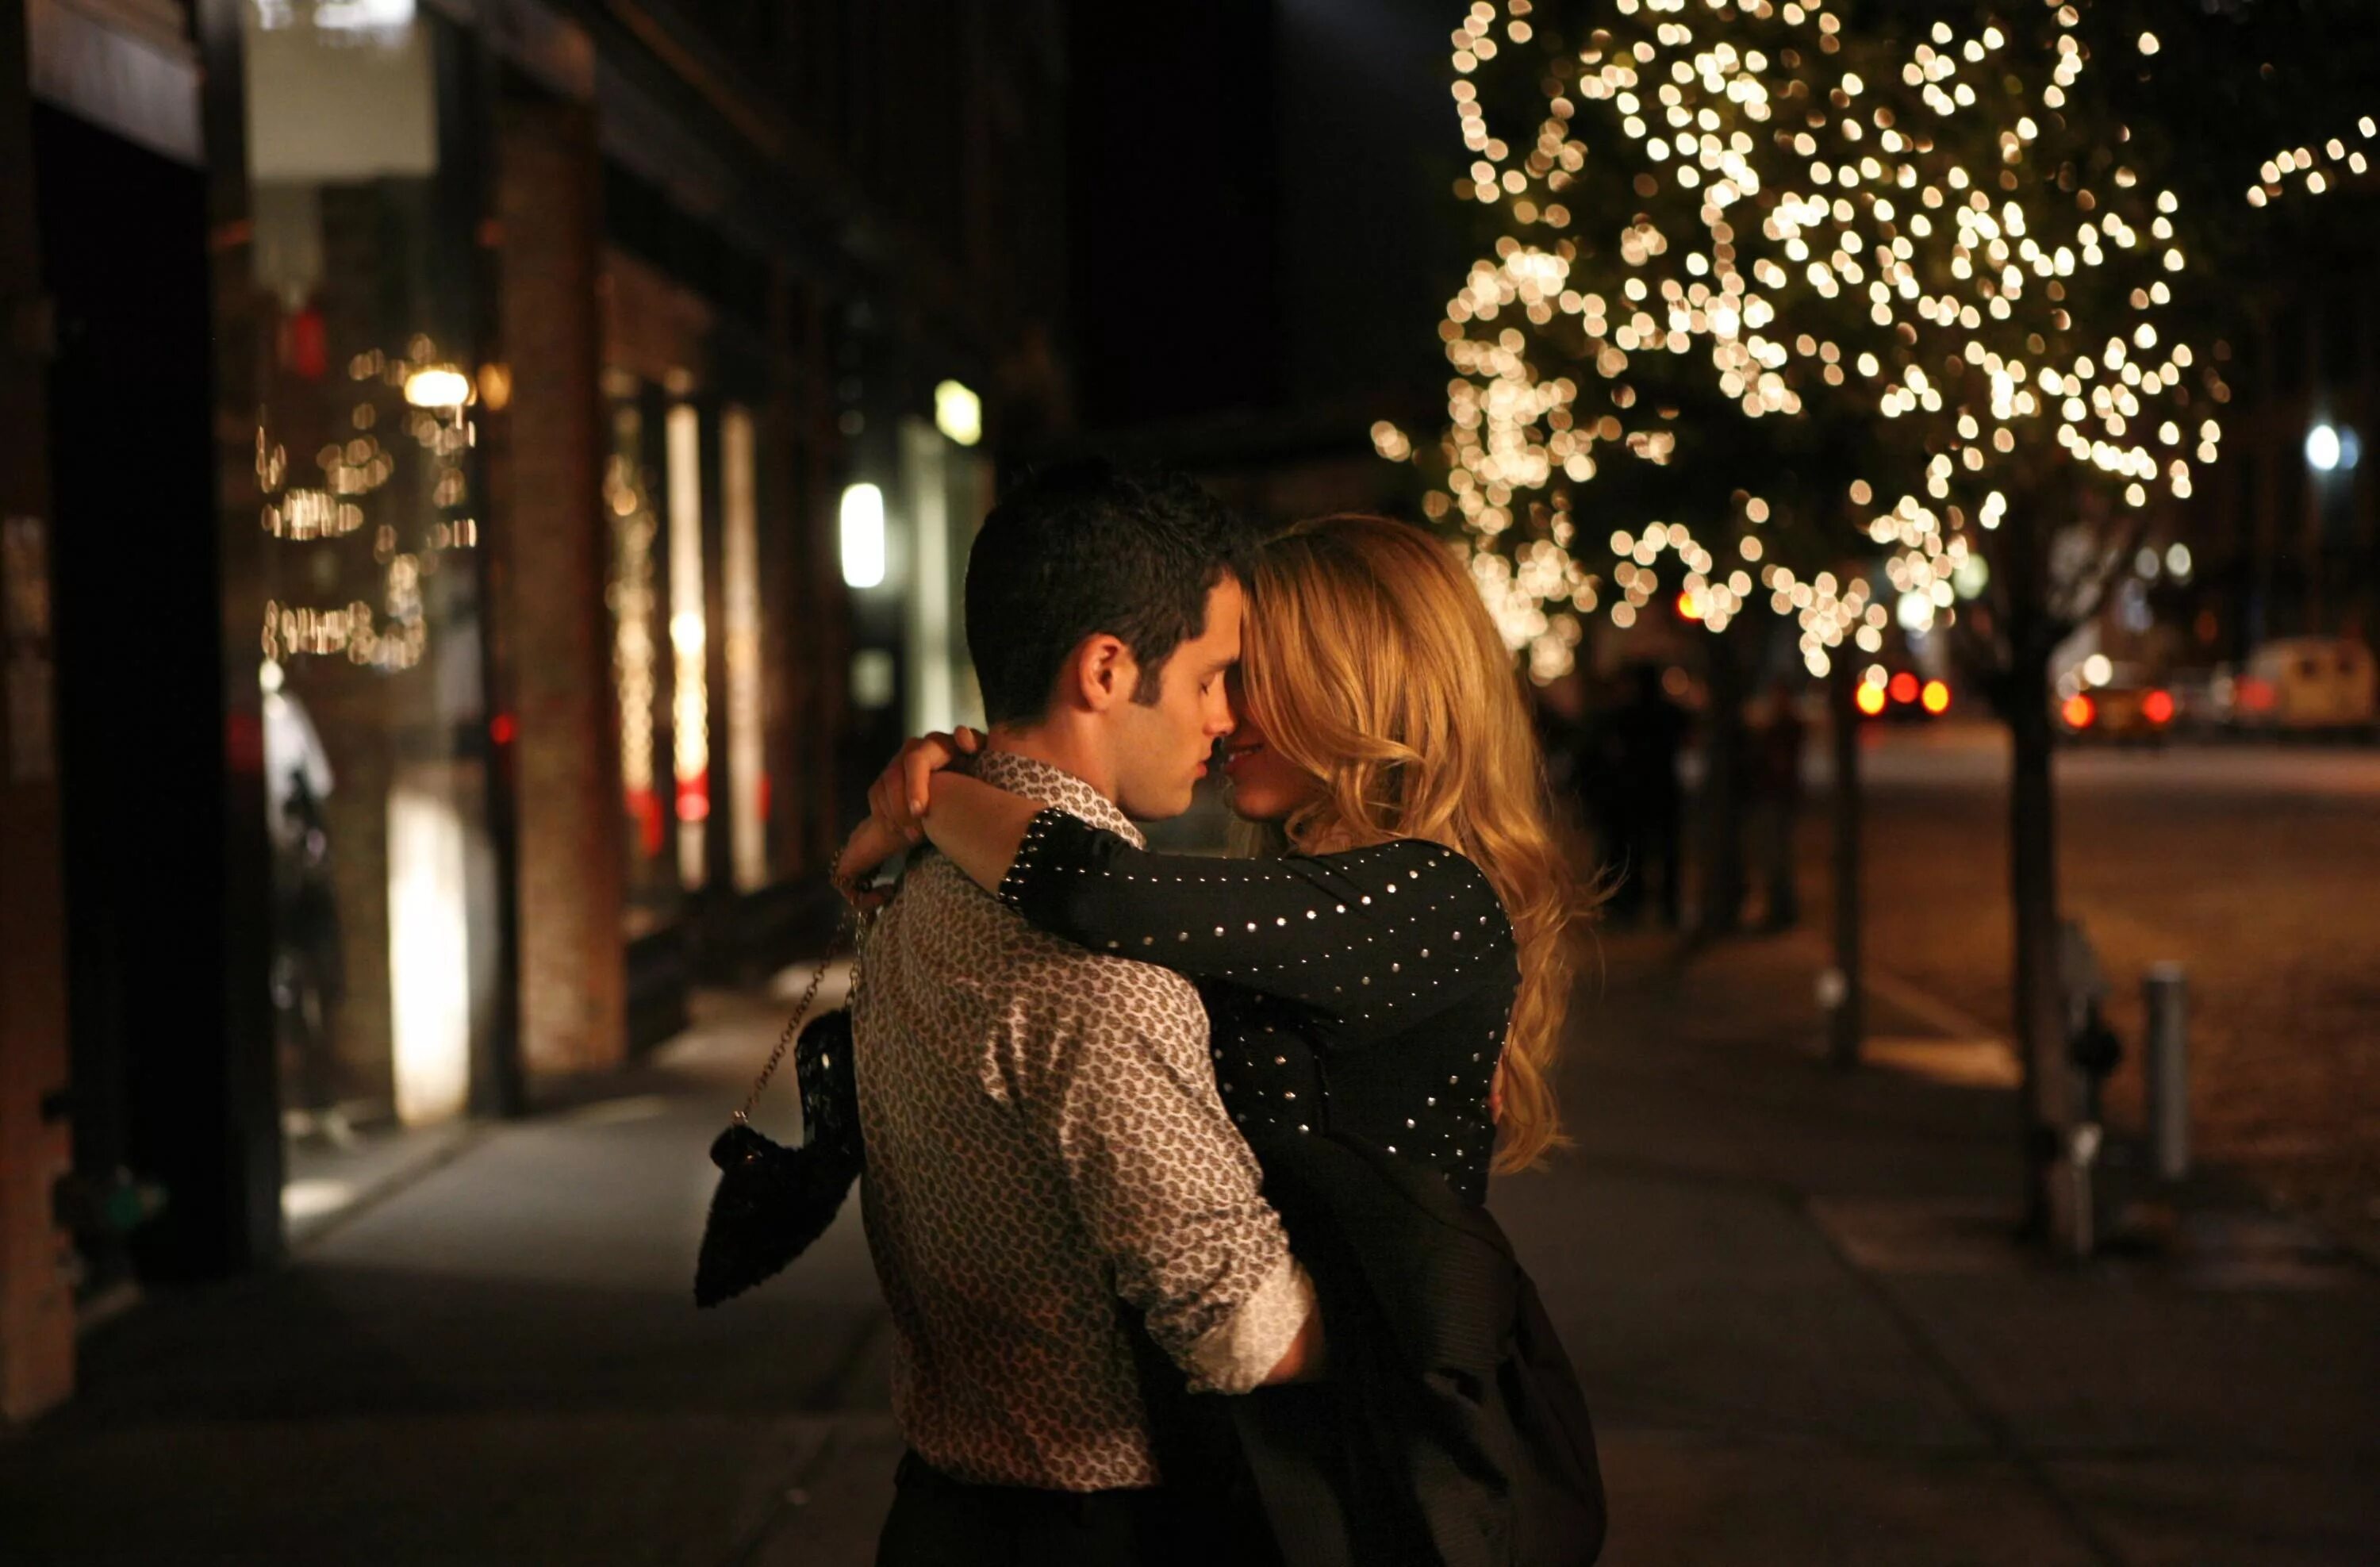 Мы гуляли довольно долго до самого вечера. Влюбленная пара вечером. Романтическая встреча влюбленных. Влюбленные на улице. Поцелуй вечером на улице.